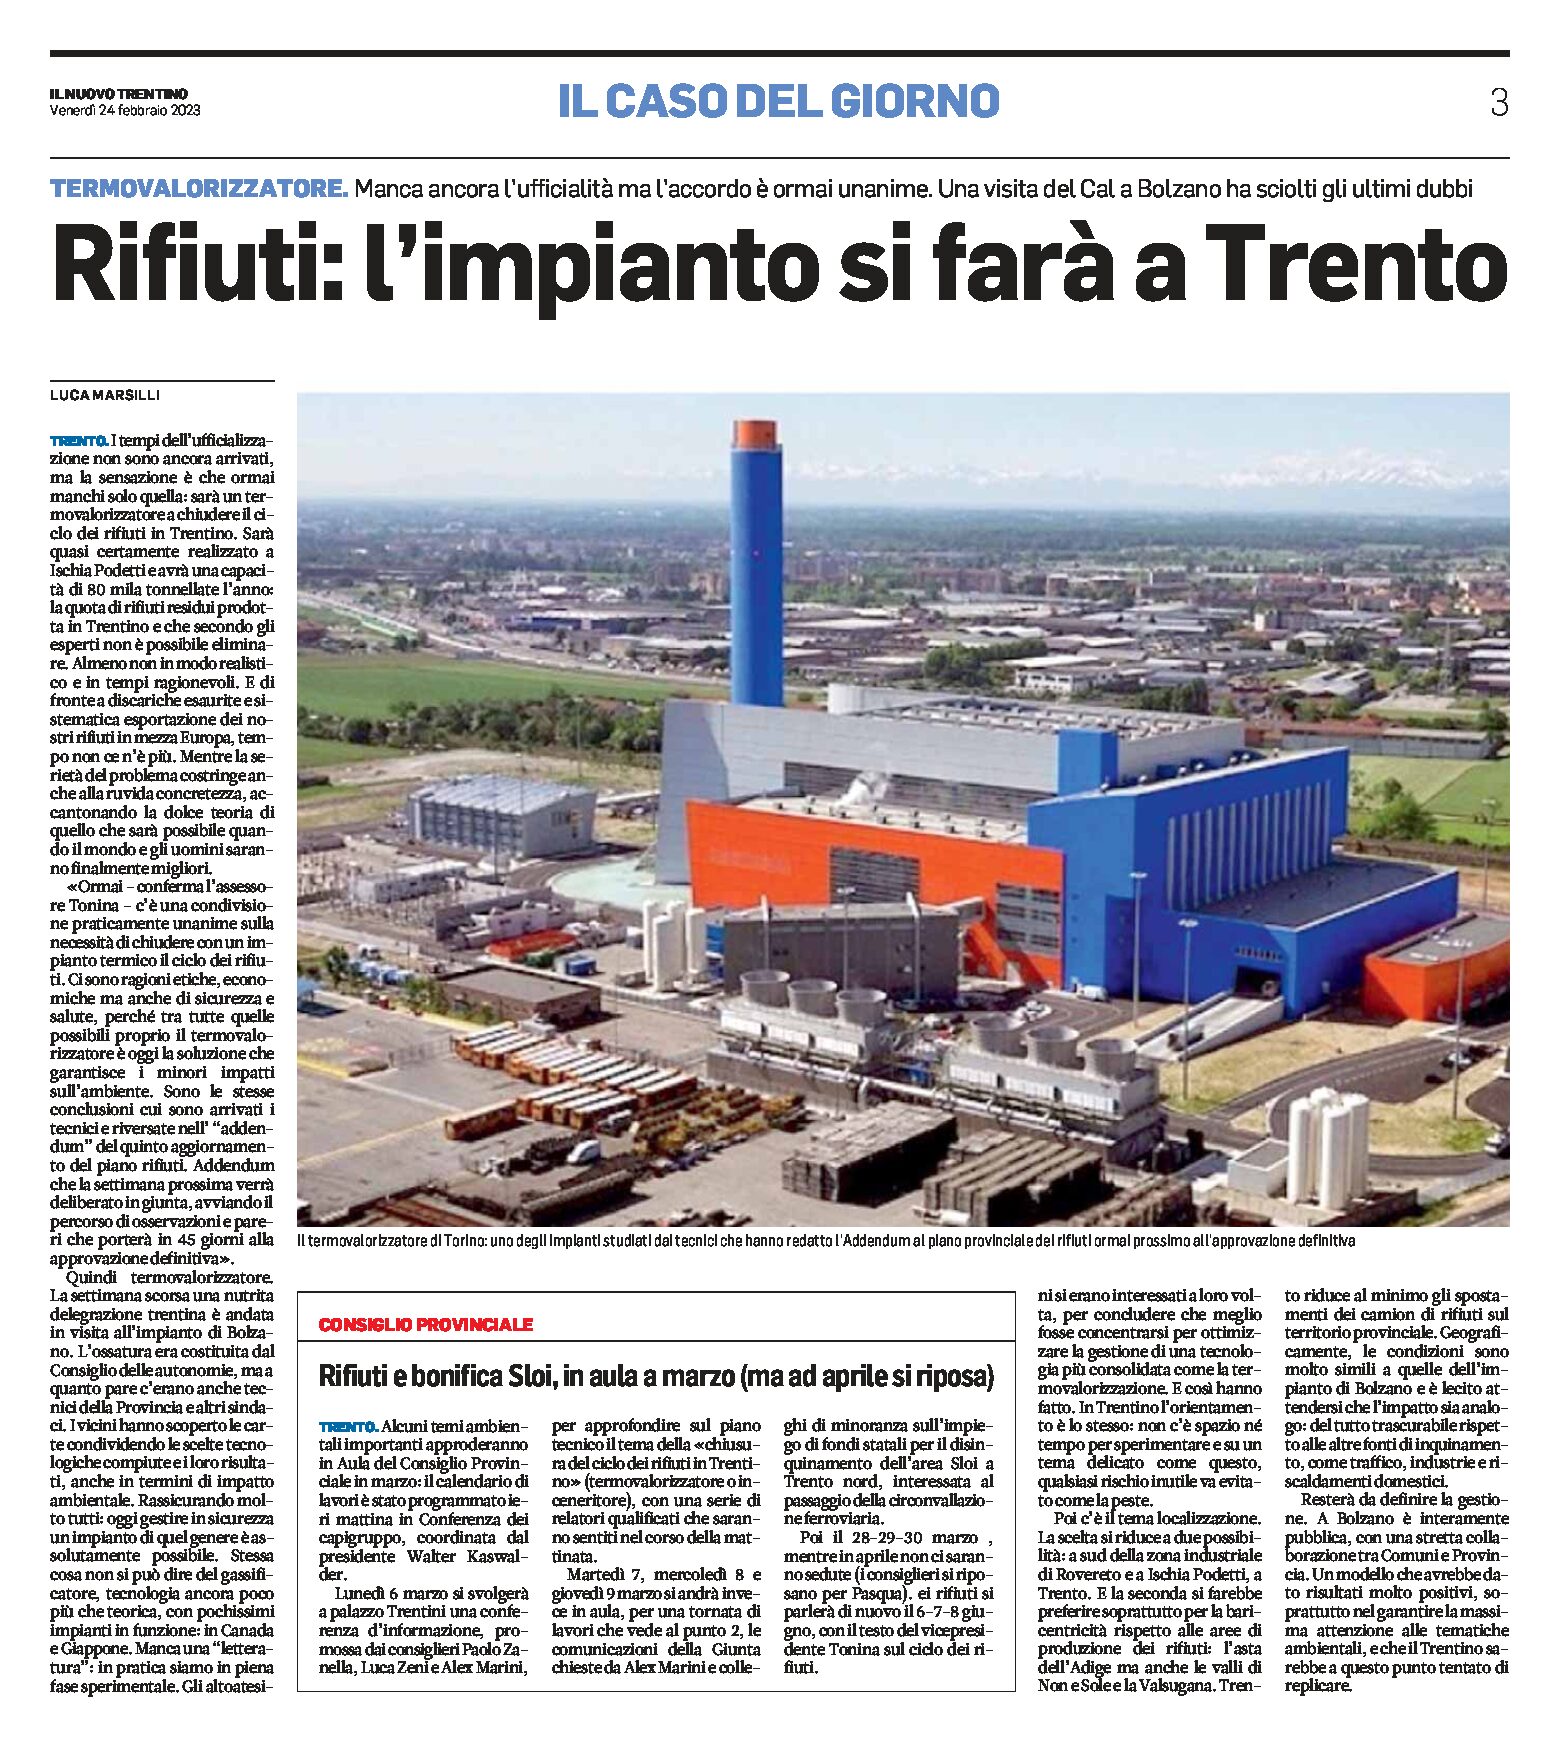 Rifiuti: l’impianto si farà a Trento